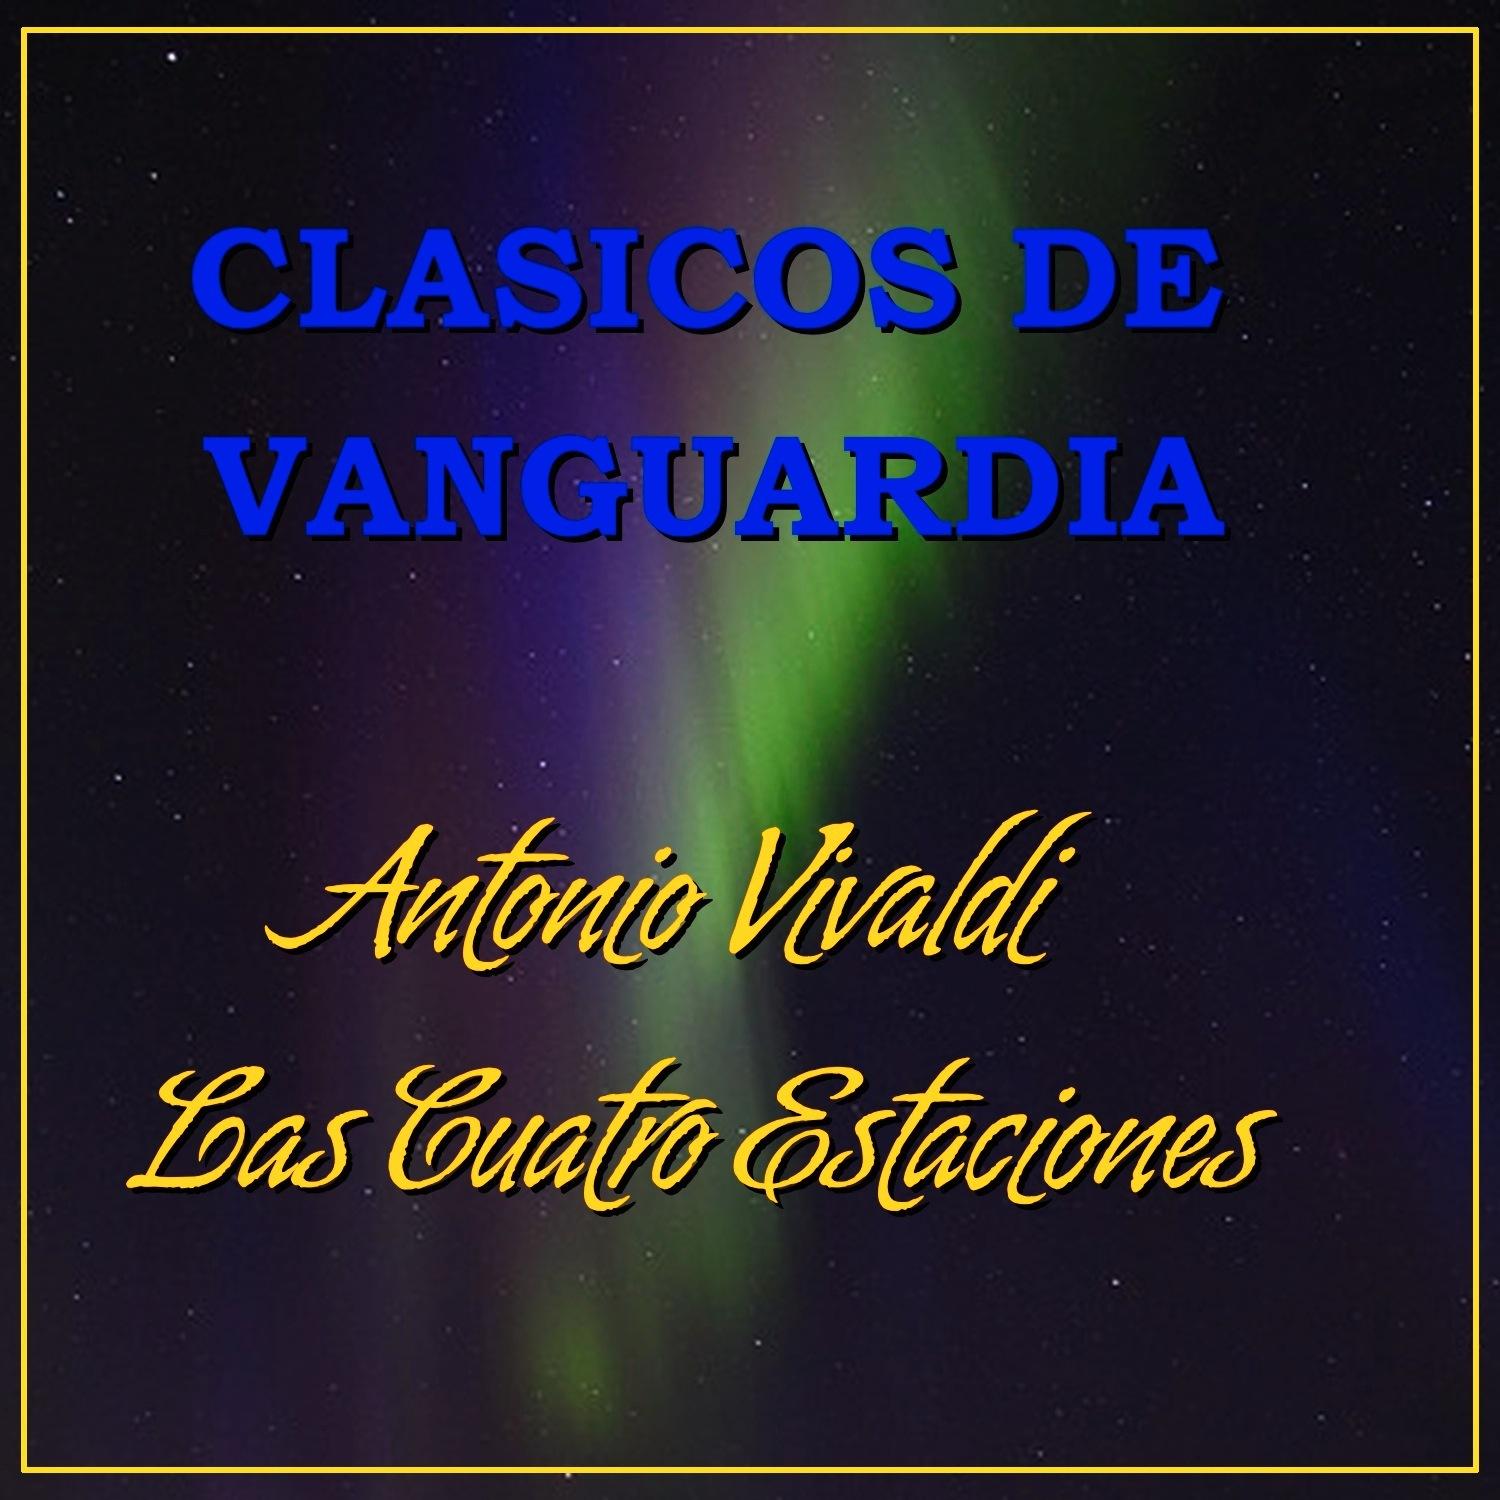 Cla sicos de Vanguardia Antonio Vivaldi